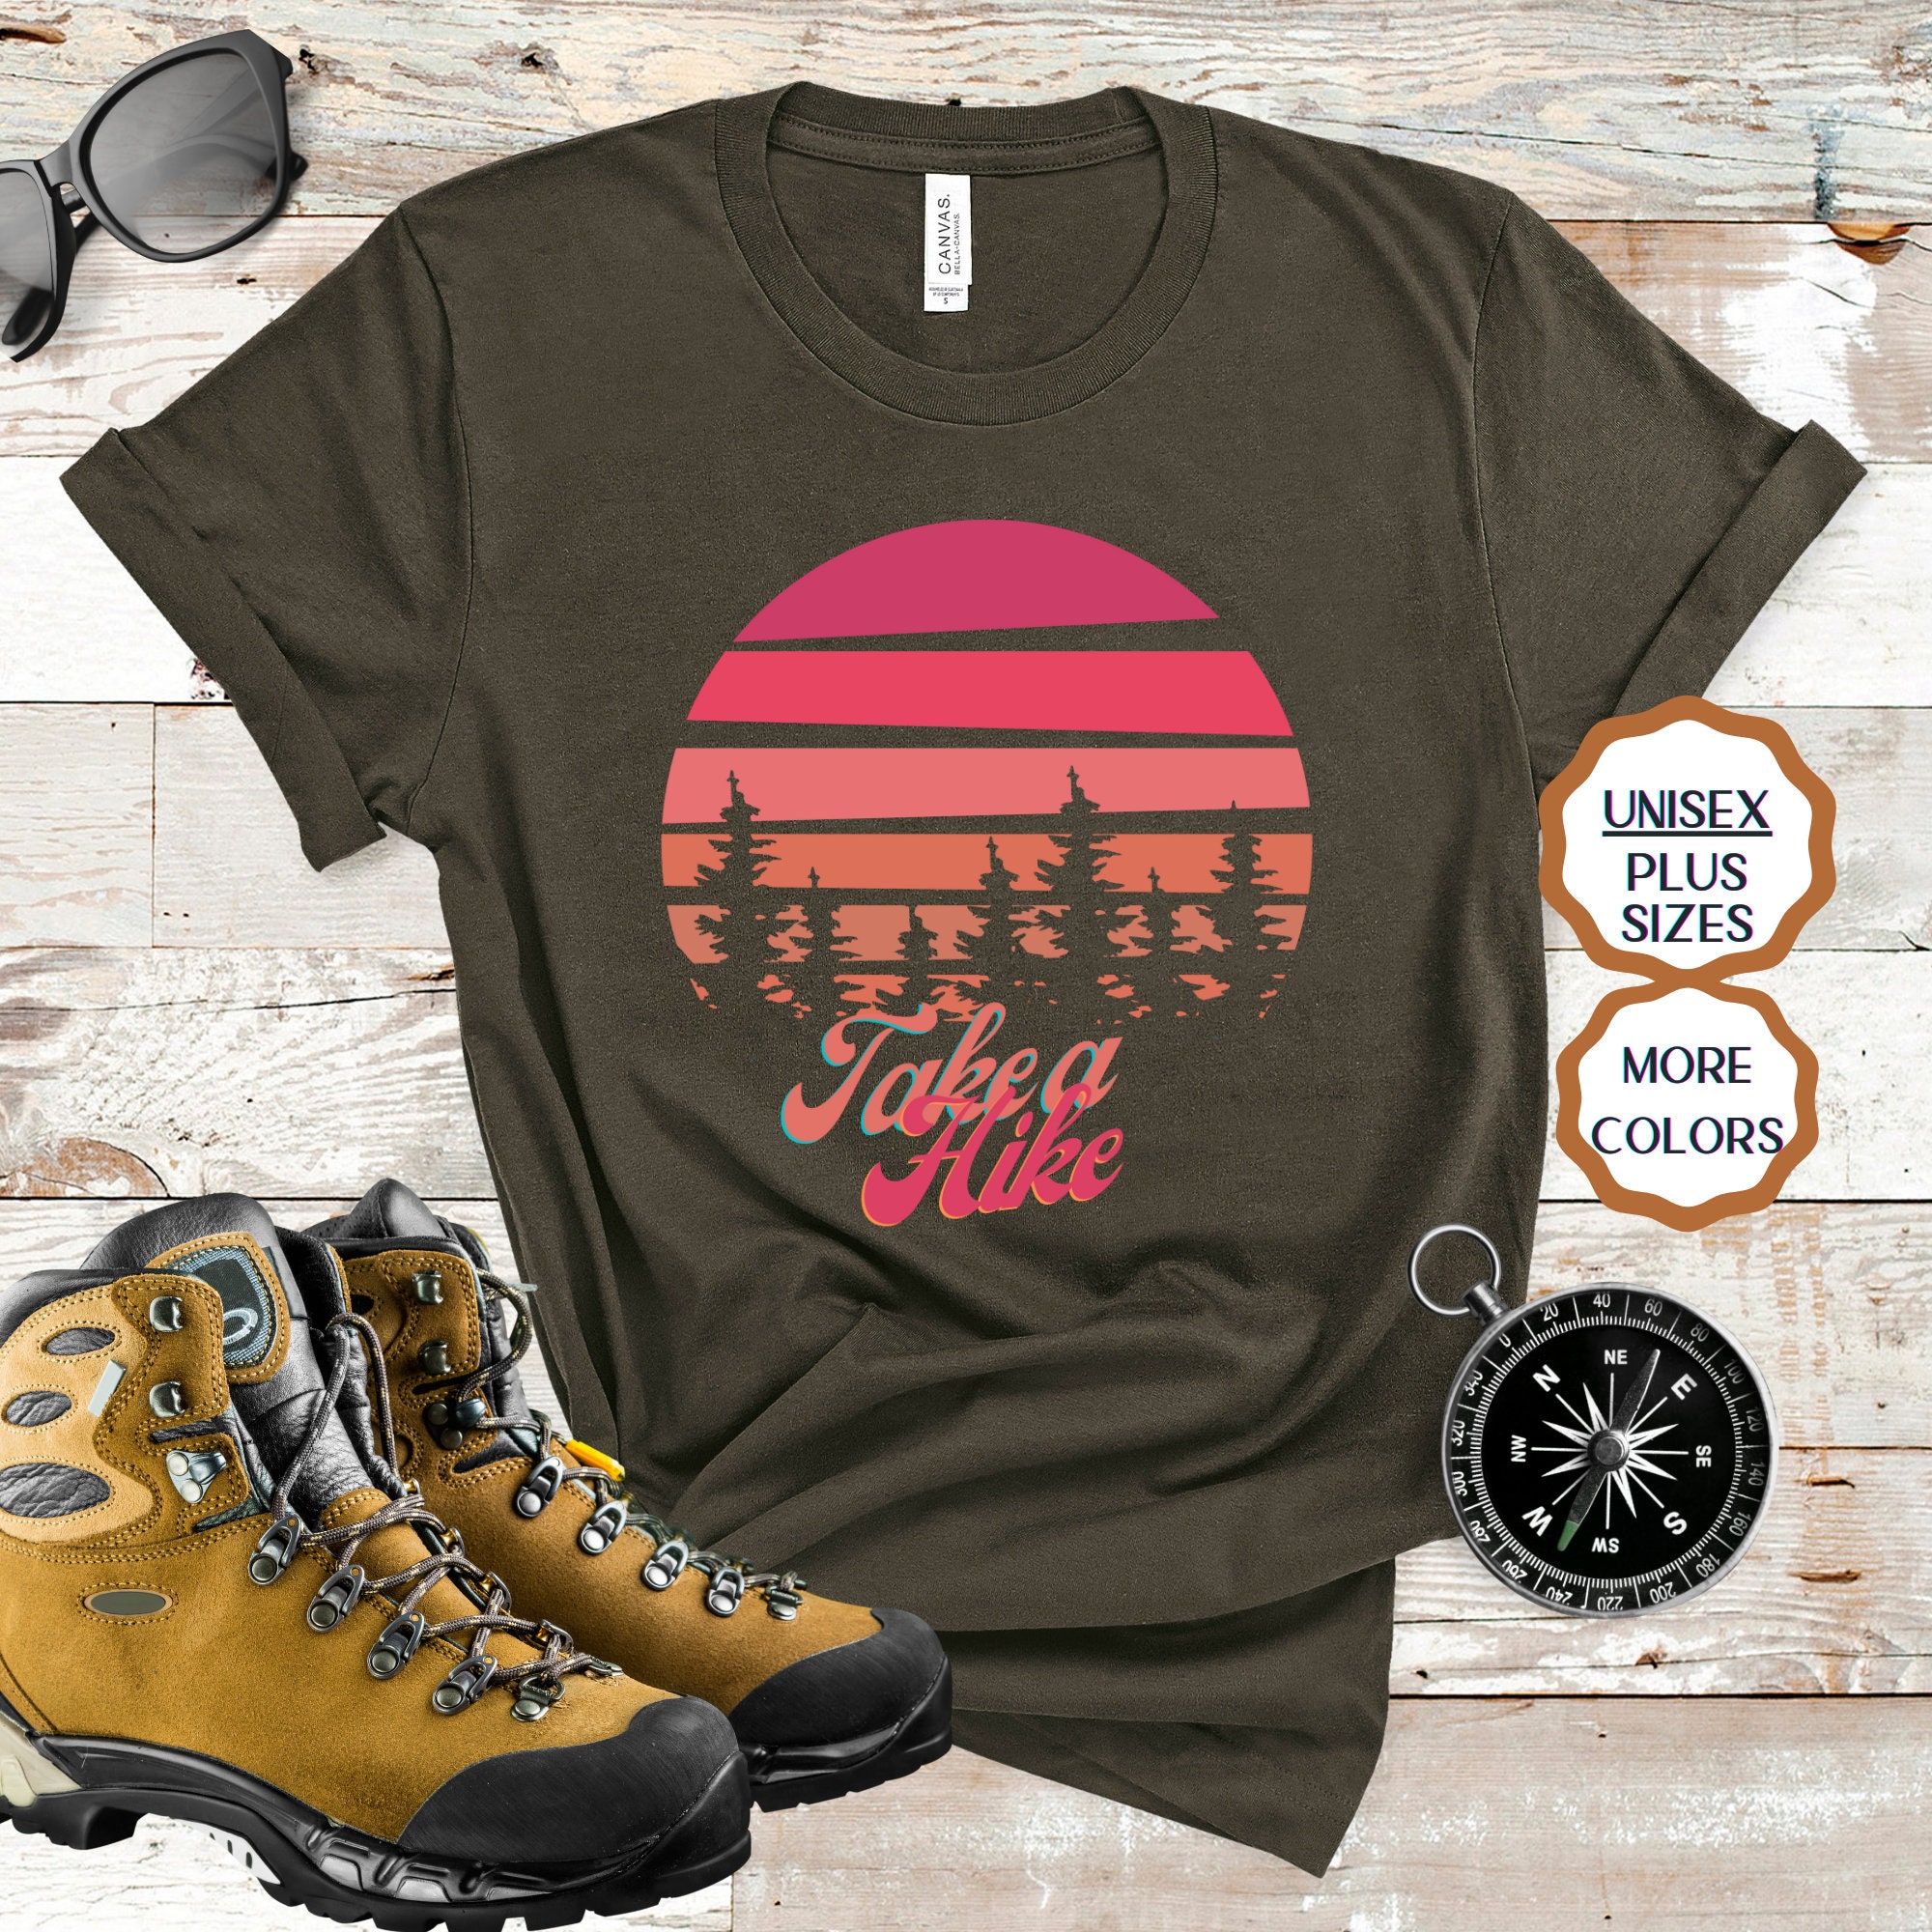 Take a Hike Tshirt Vintage Hiking Shirt Camping Shirt | Etsy